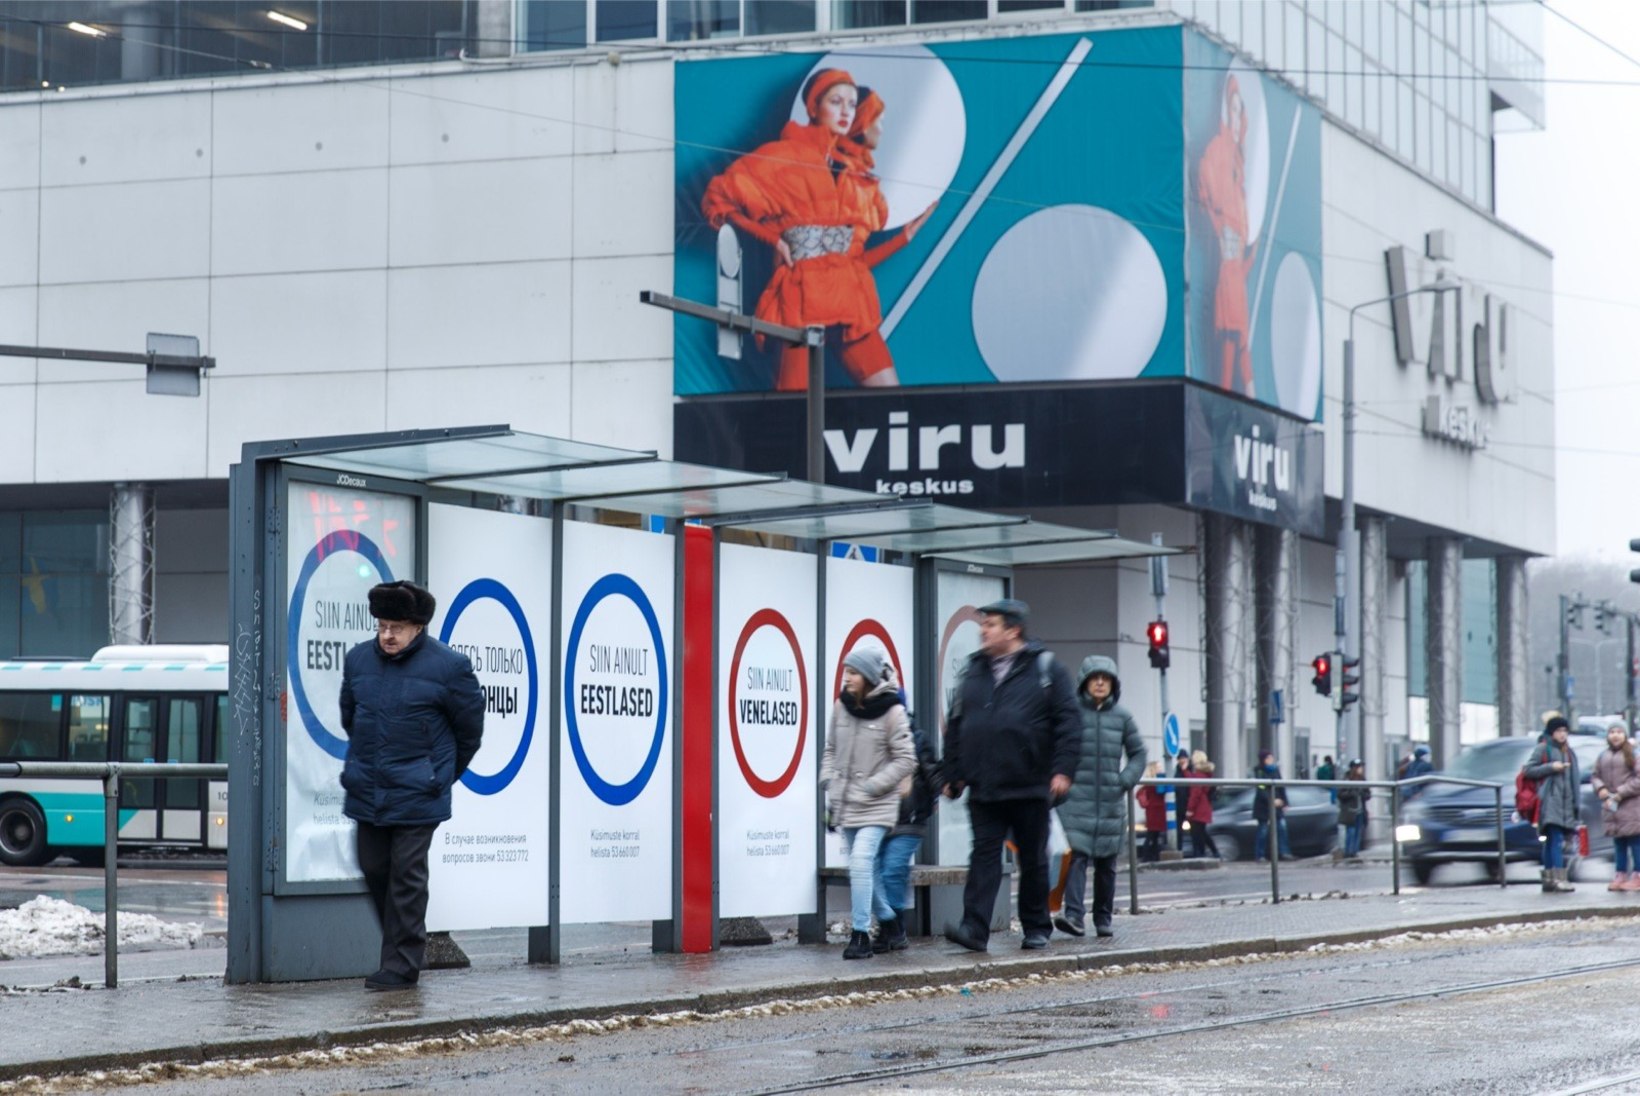 FOTOD | Tallinna kesklinna püstitati plakatid, mis kutsuvad eestlasi ja venelasi üksteisest eraldi seisma